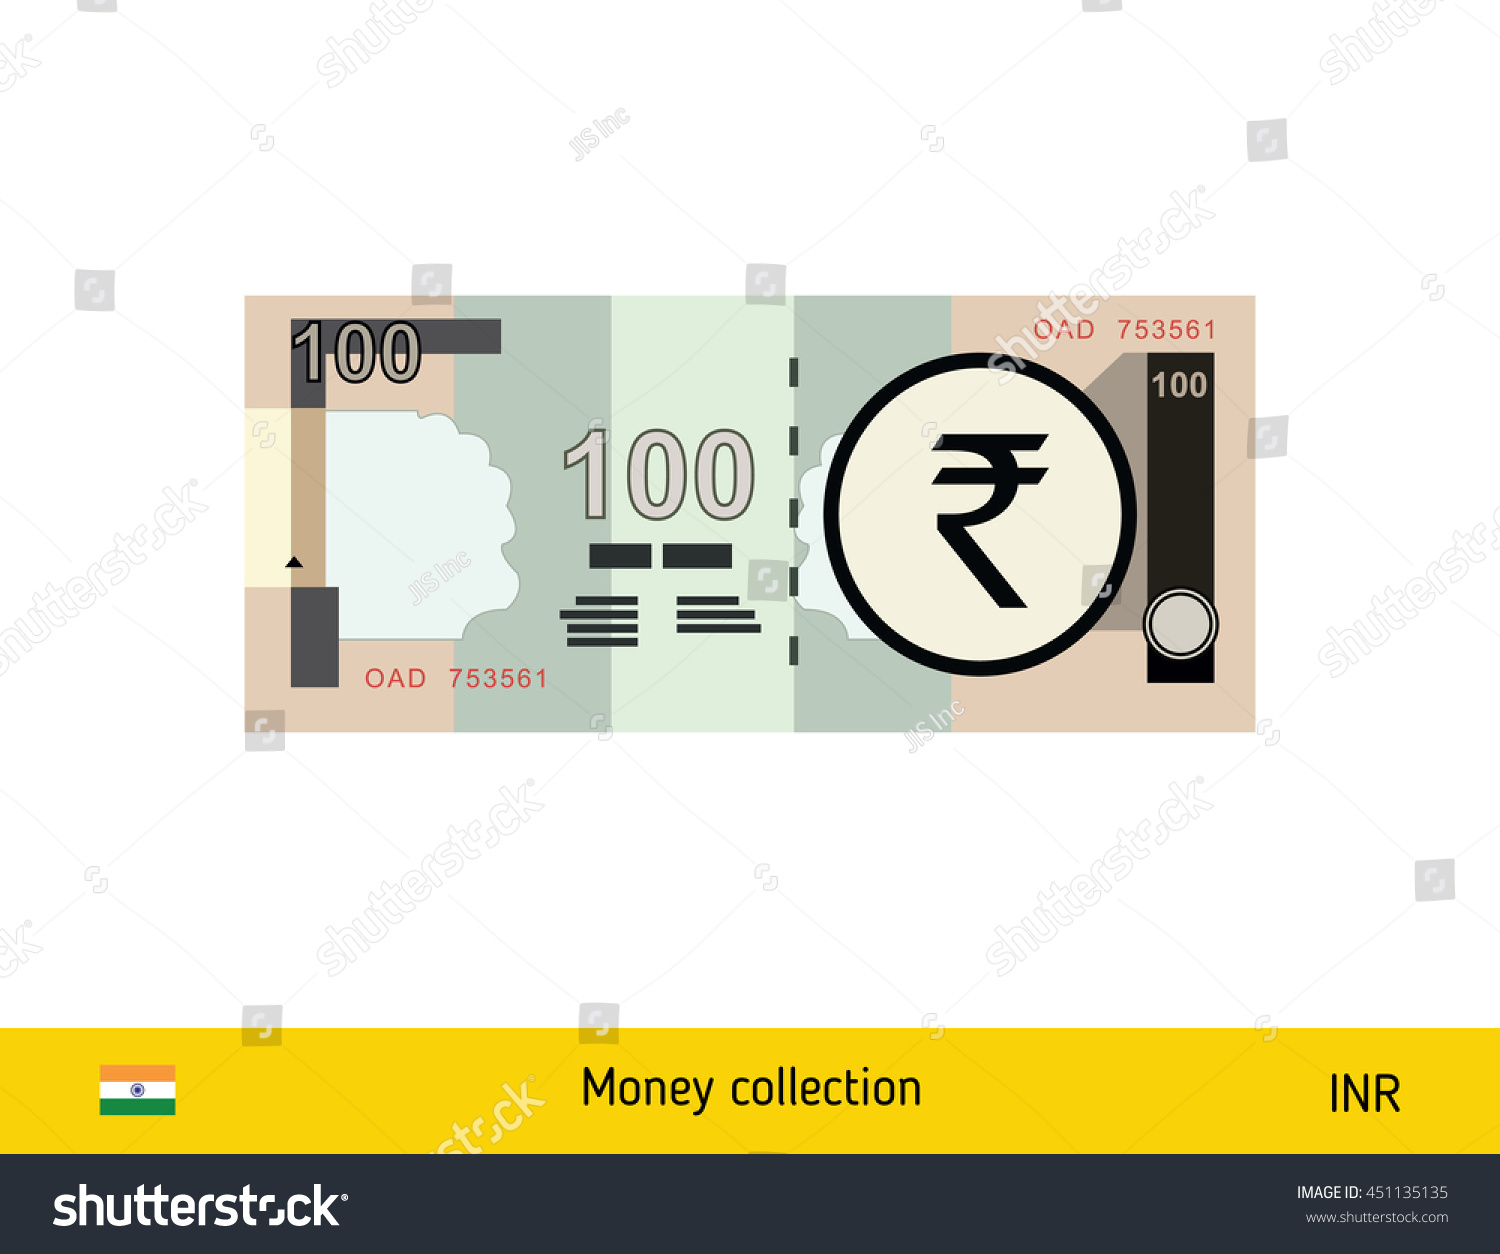 SVG of 100 rupee banknote illustration. svg